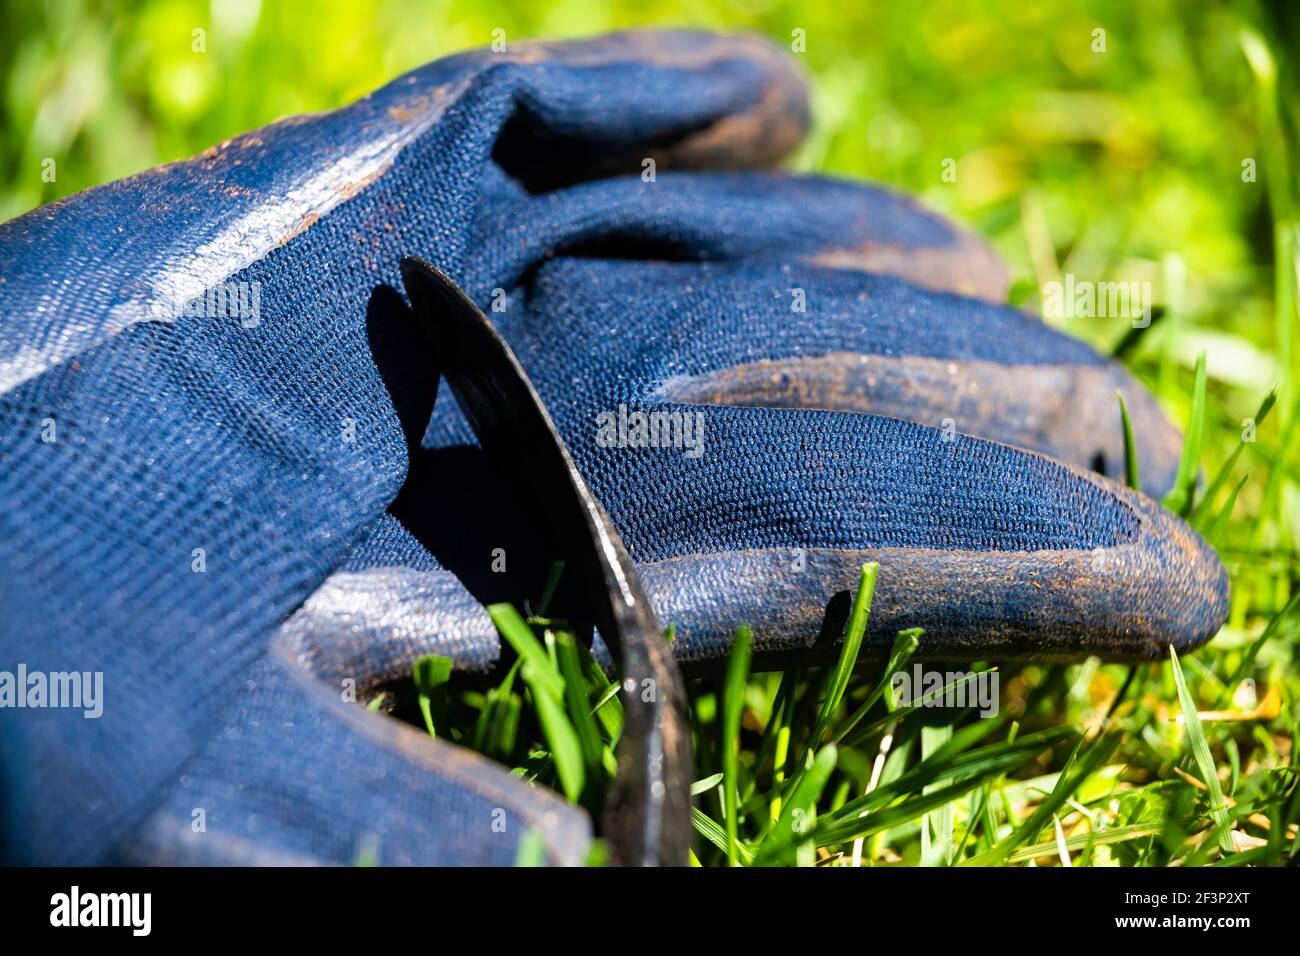 Macro gros plan de gants de jardinage de protection avec poignée en  caoutchouc et déposez le cultivateur de désherbage à la main sur une  pelouse en herbe verte à la maison jardin